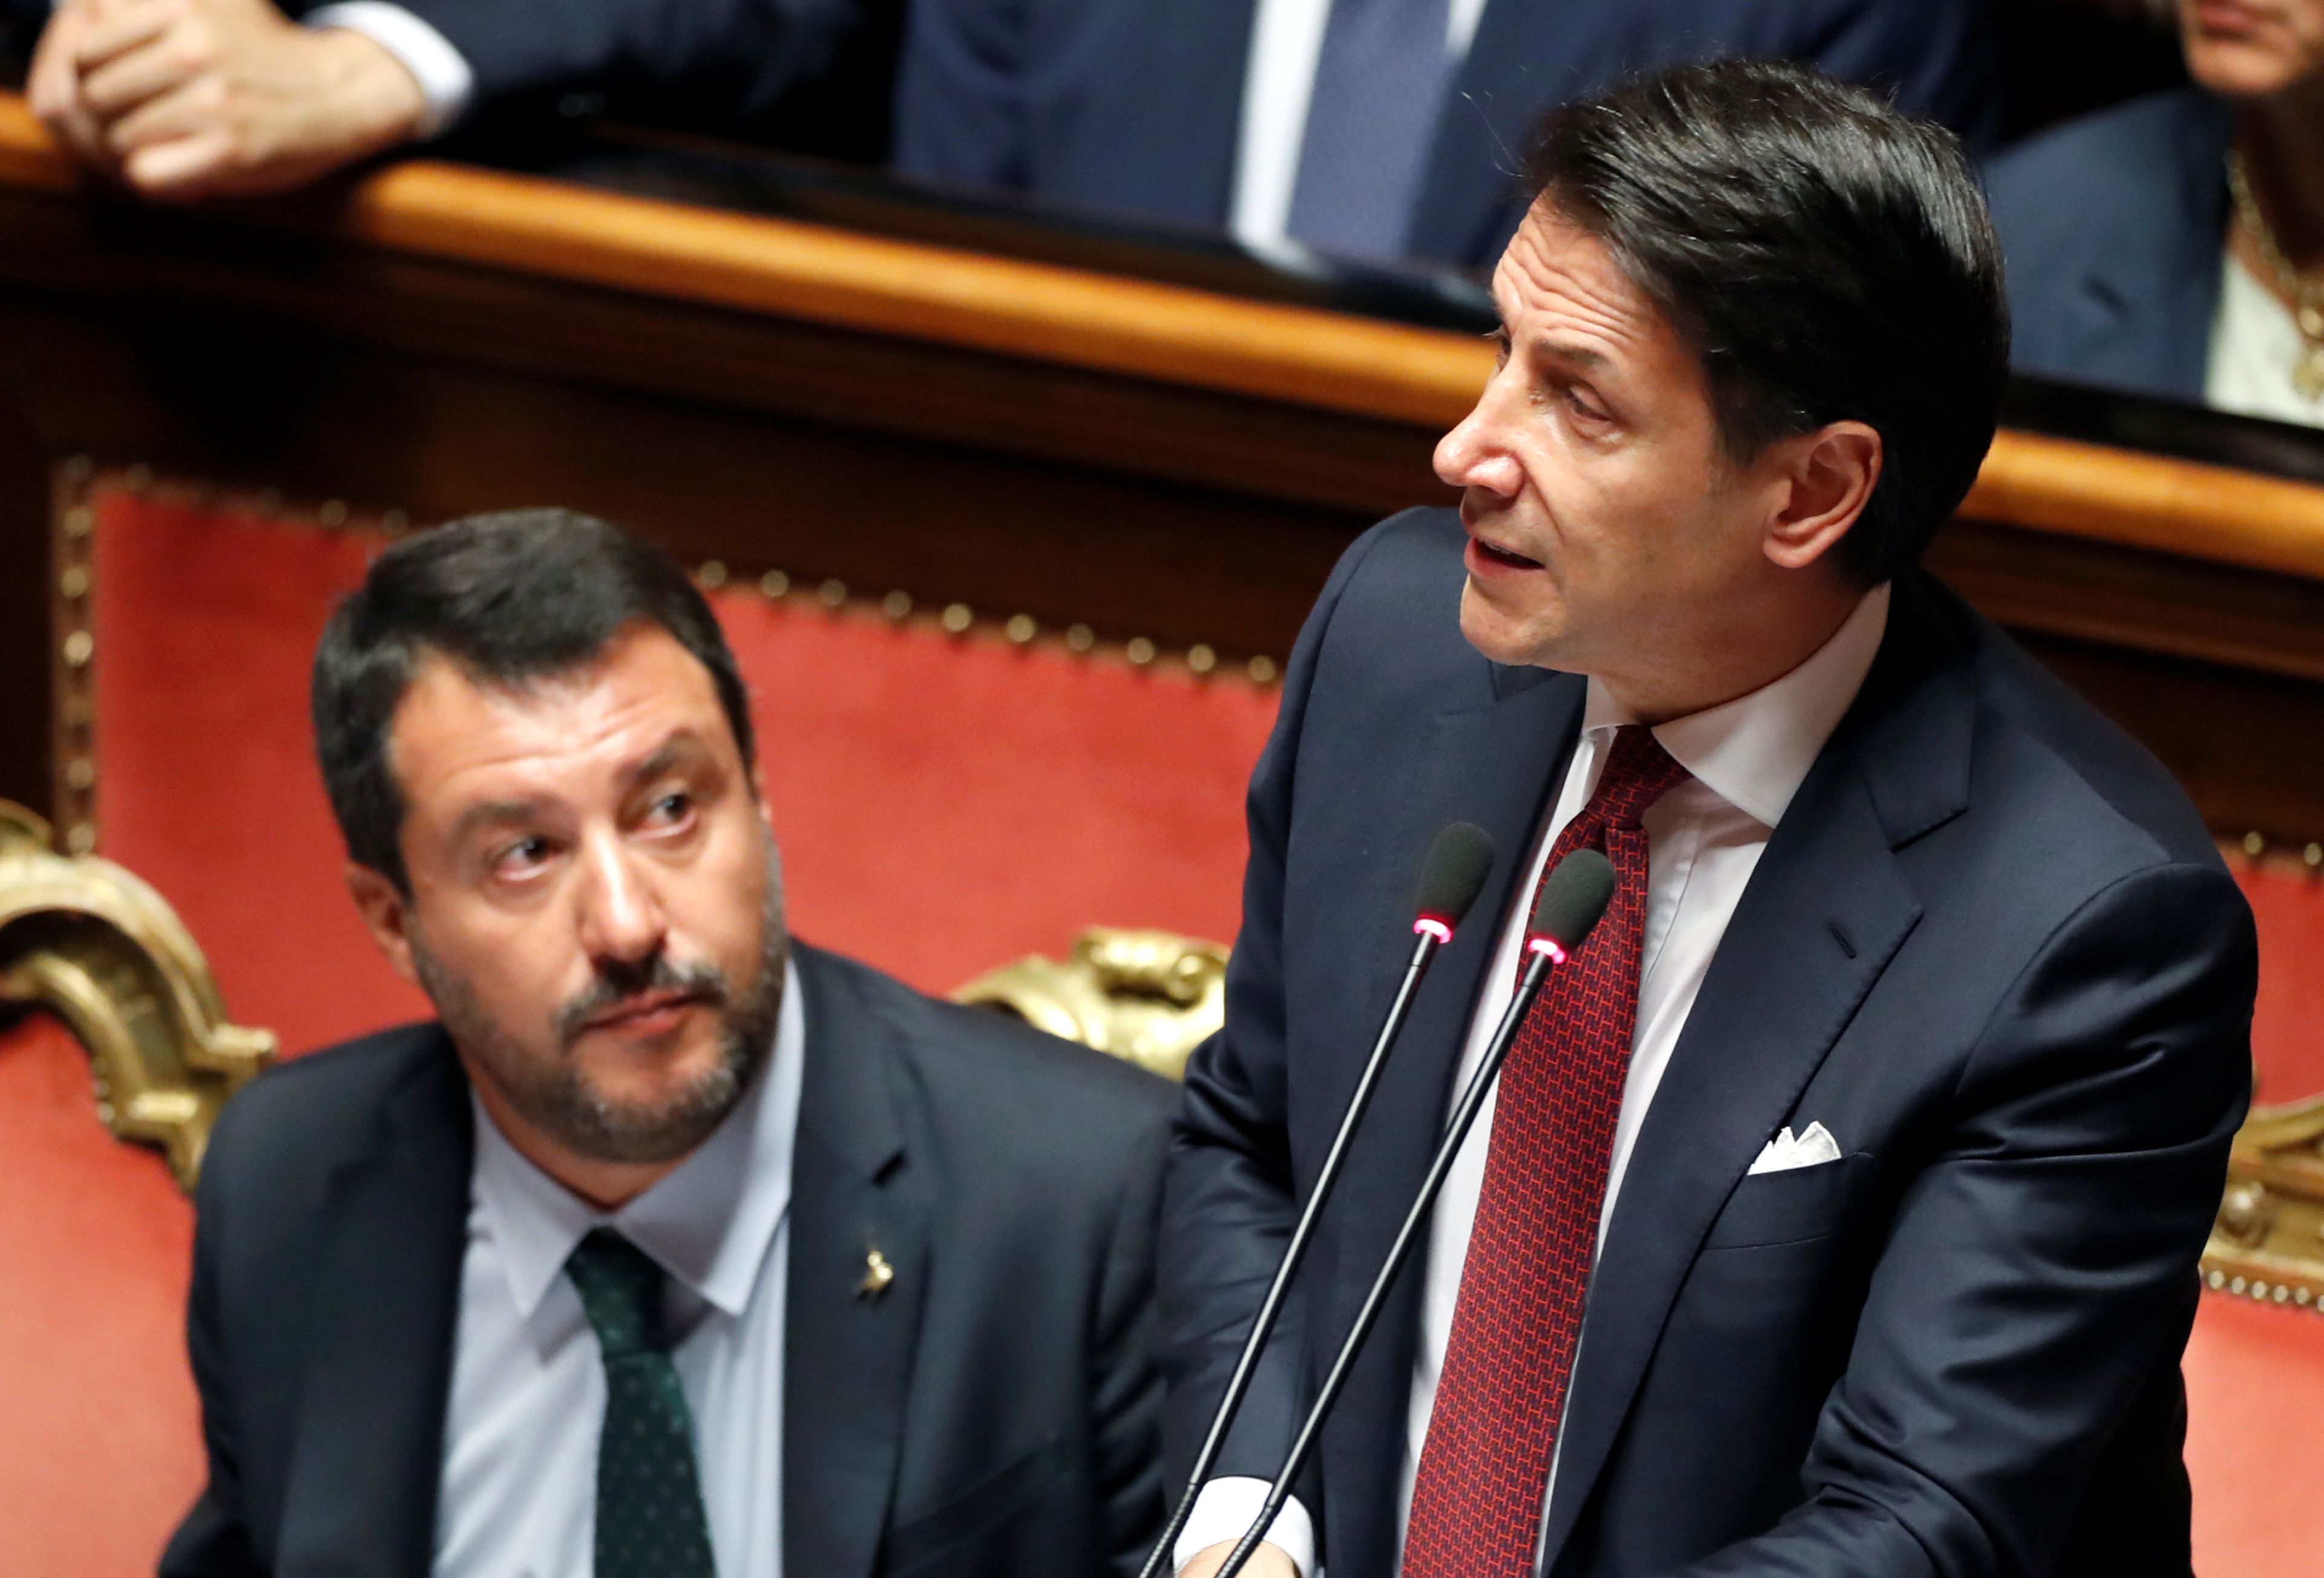 El ex primer ministro italiano, Giuseppe Conte, y sentado a su lado, el ultraderechista Matteo Salvini